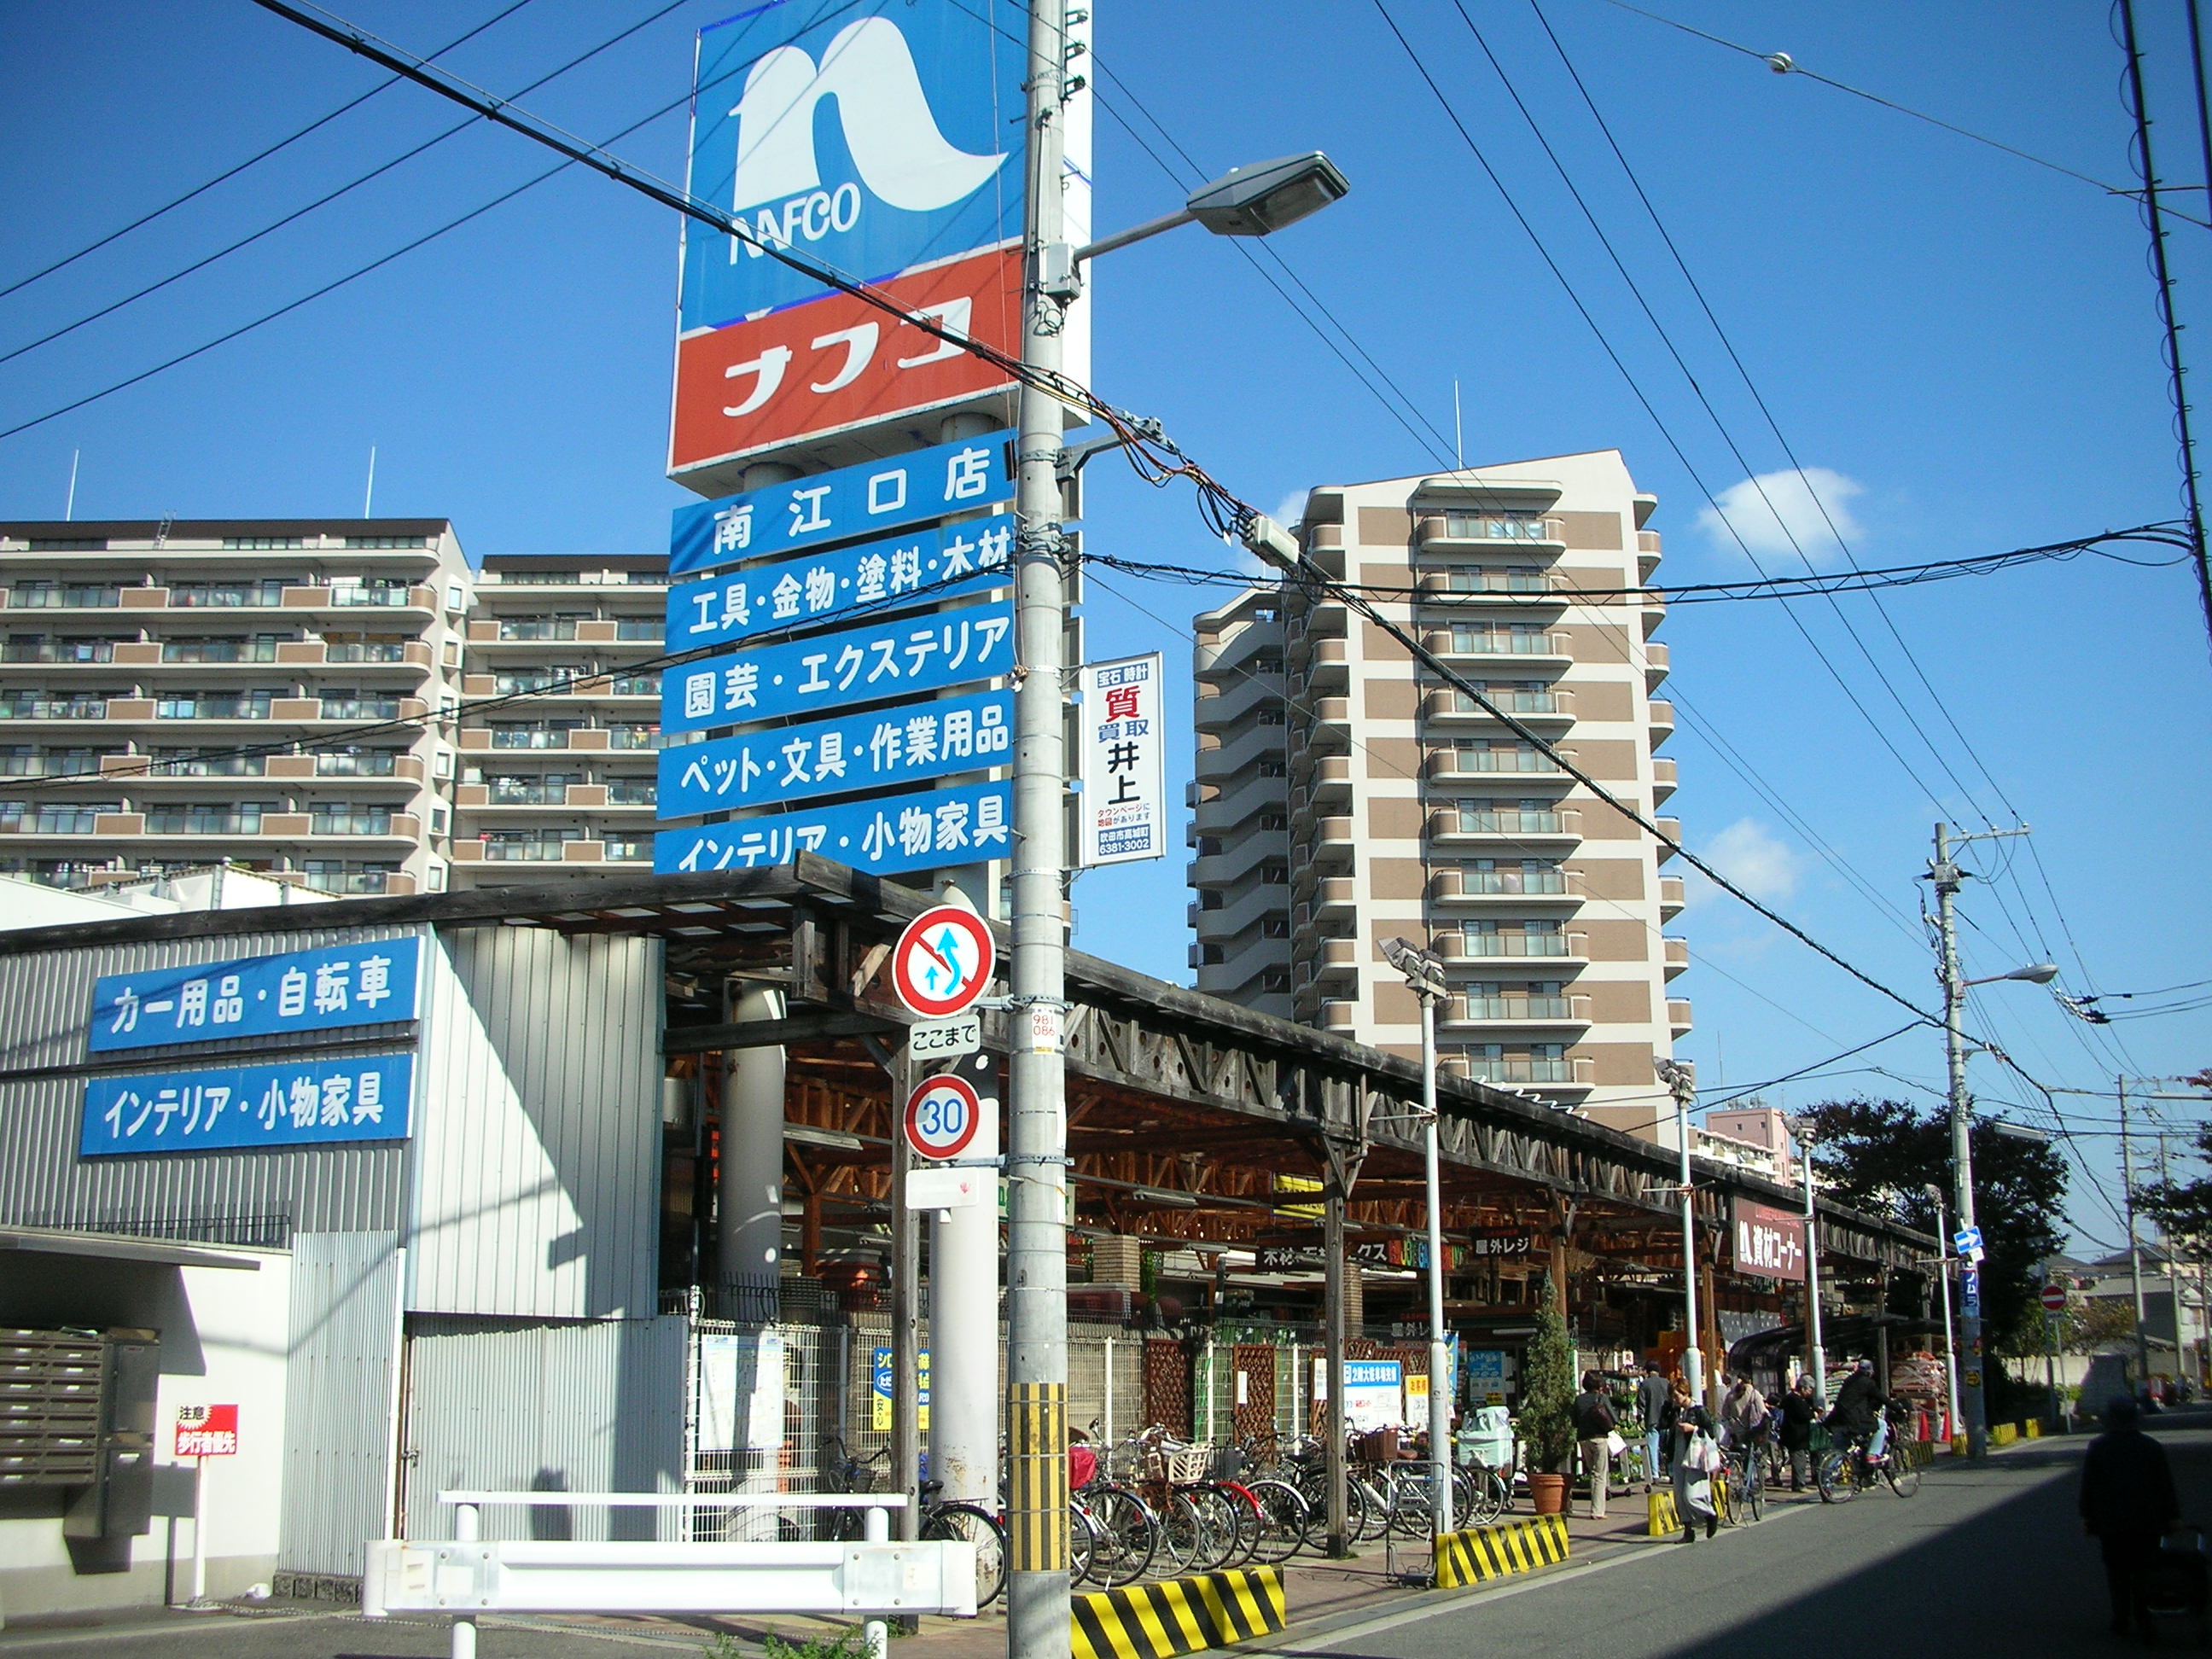 Home center. 568m to Ho Mupurazanafuko Minamieguchi store (hardware store)